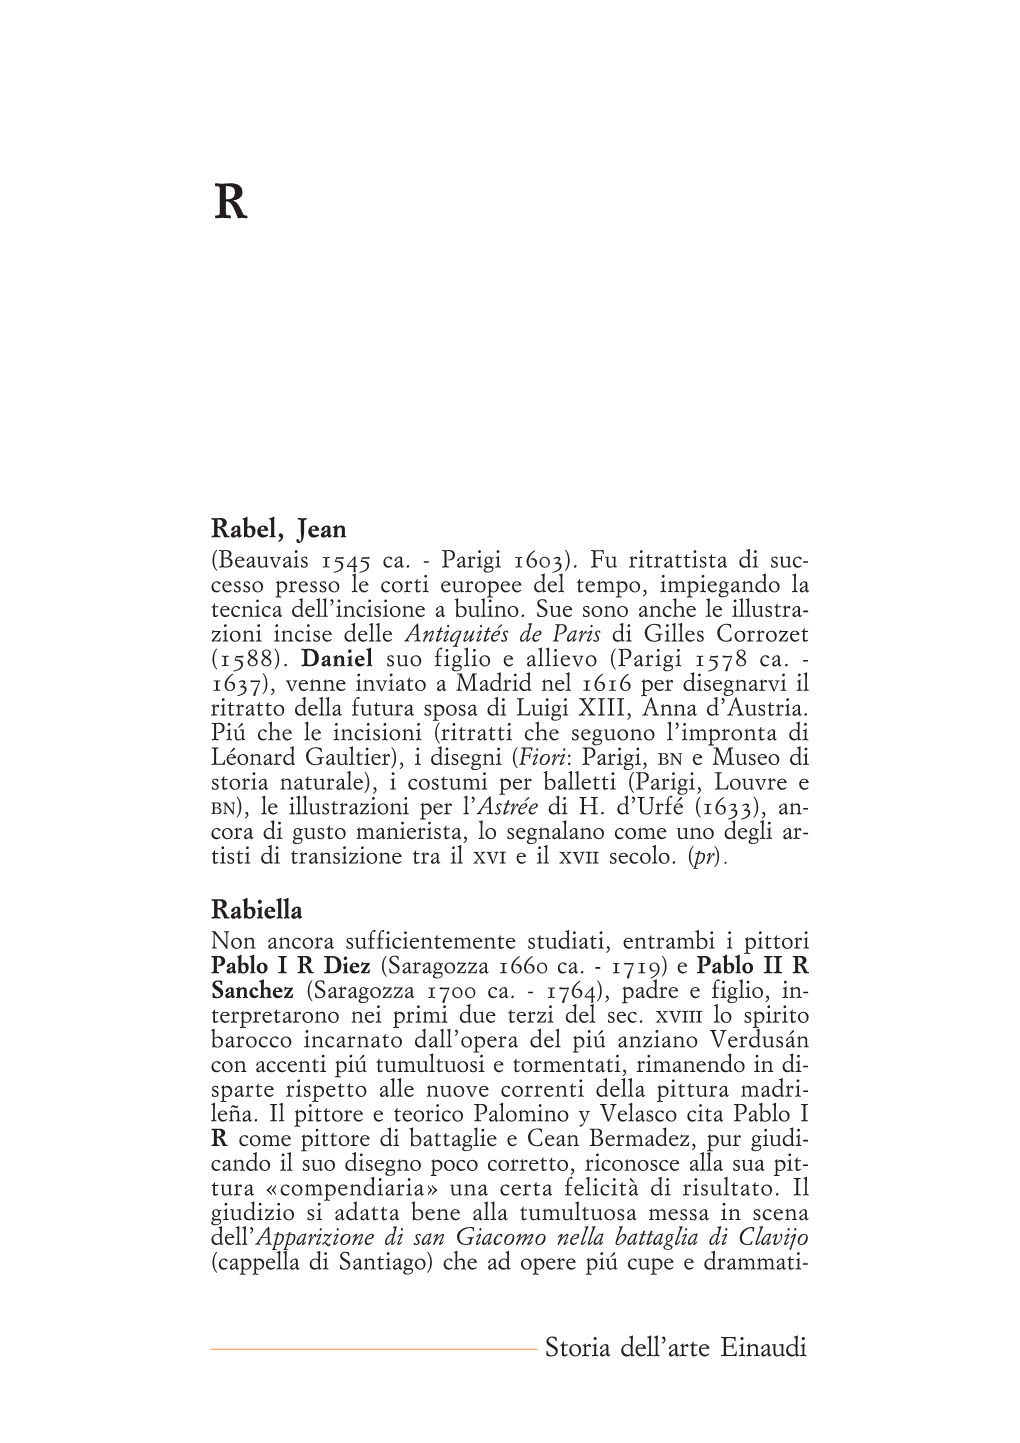 Rabel, Jean Rabiella Storia Dell'arte Einaudi